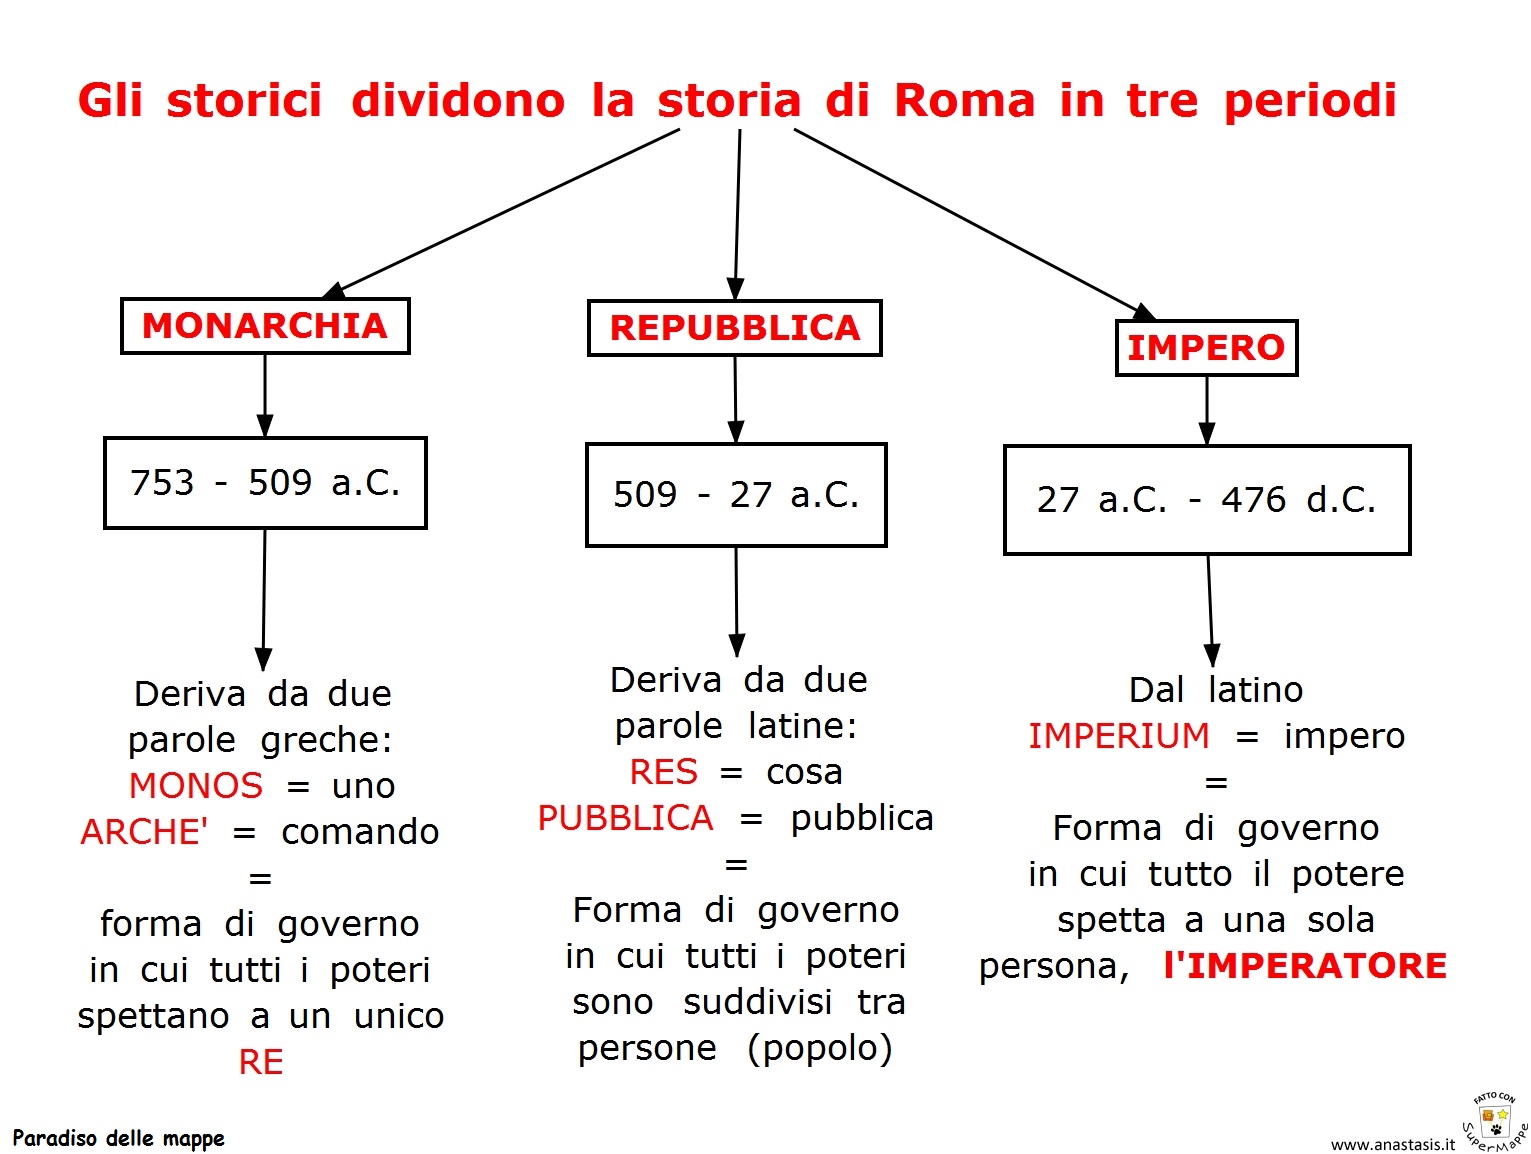 Paradiso delle mappe: La storia di Roma in tre periodi